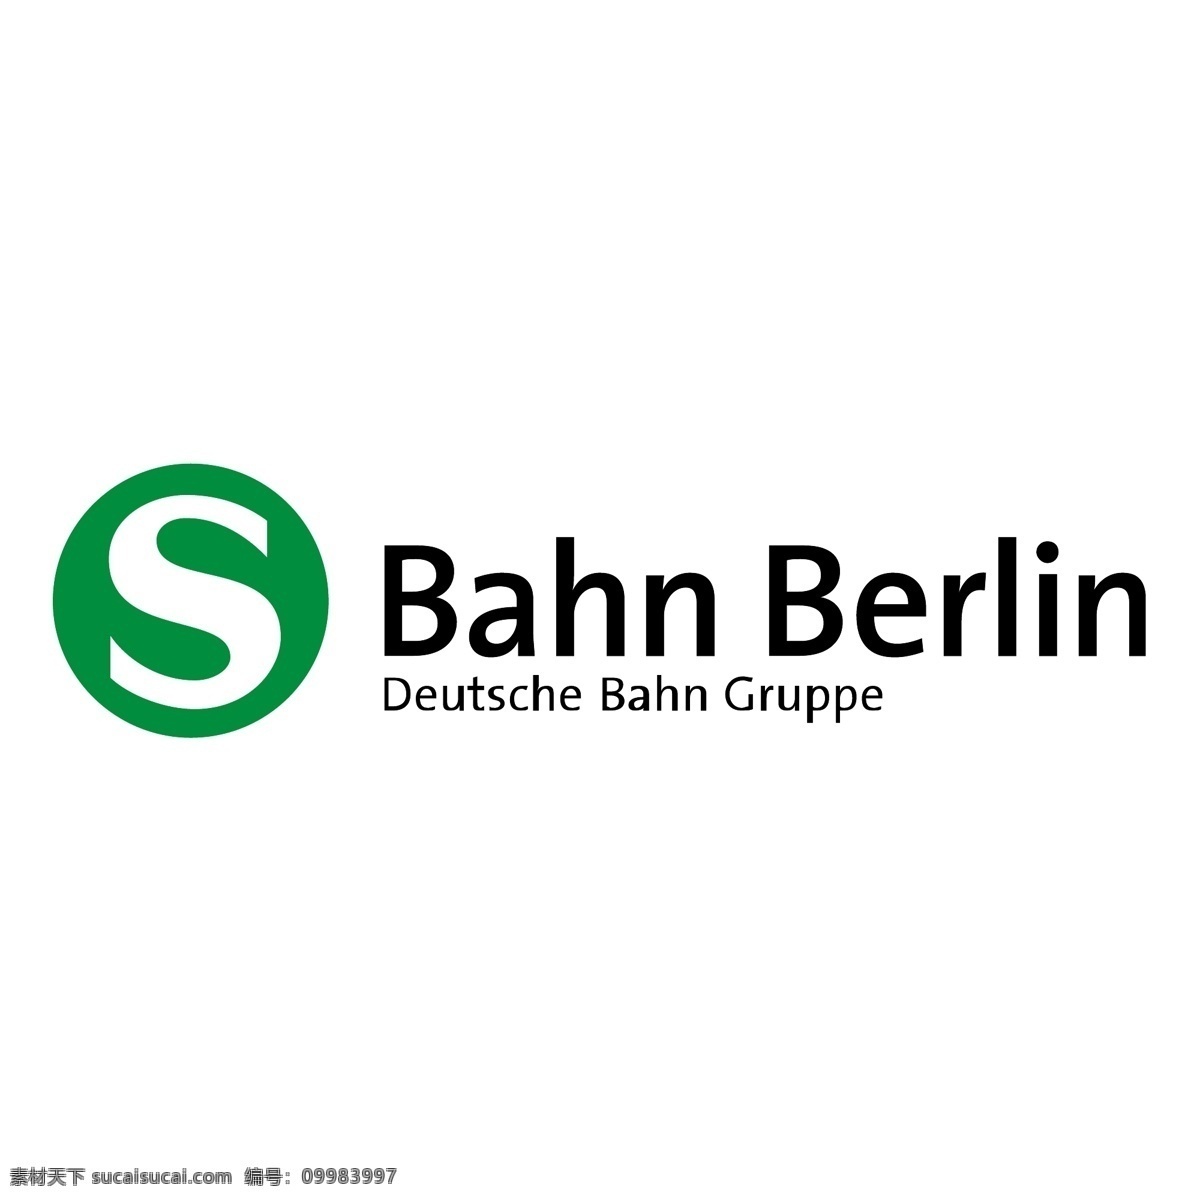 柏林的铁路 矢量标志下载 免费矢量标识 商标 品牌标识 标识 矢量 免费 品牌 公司 白色